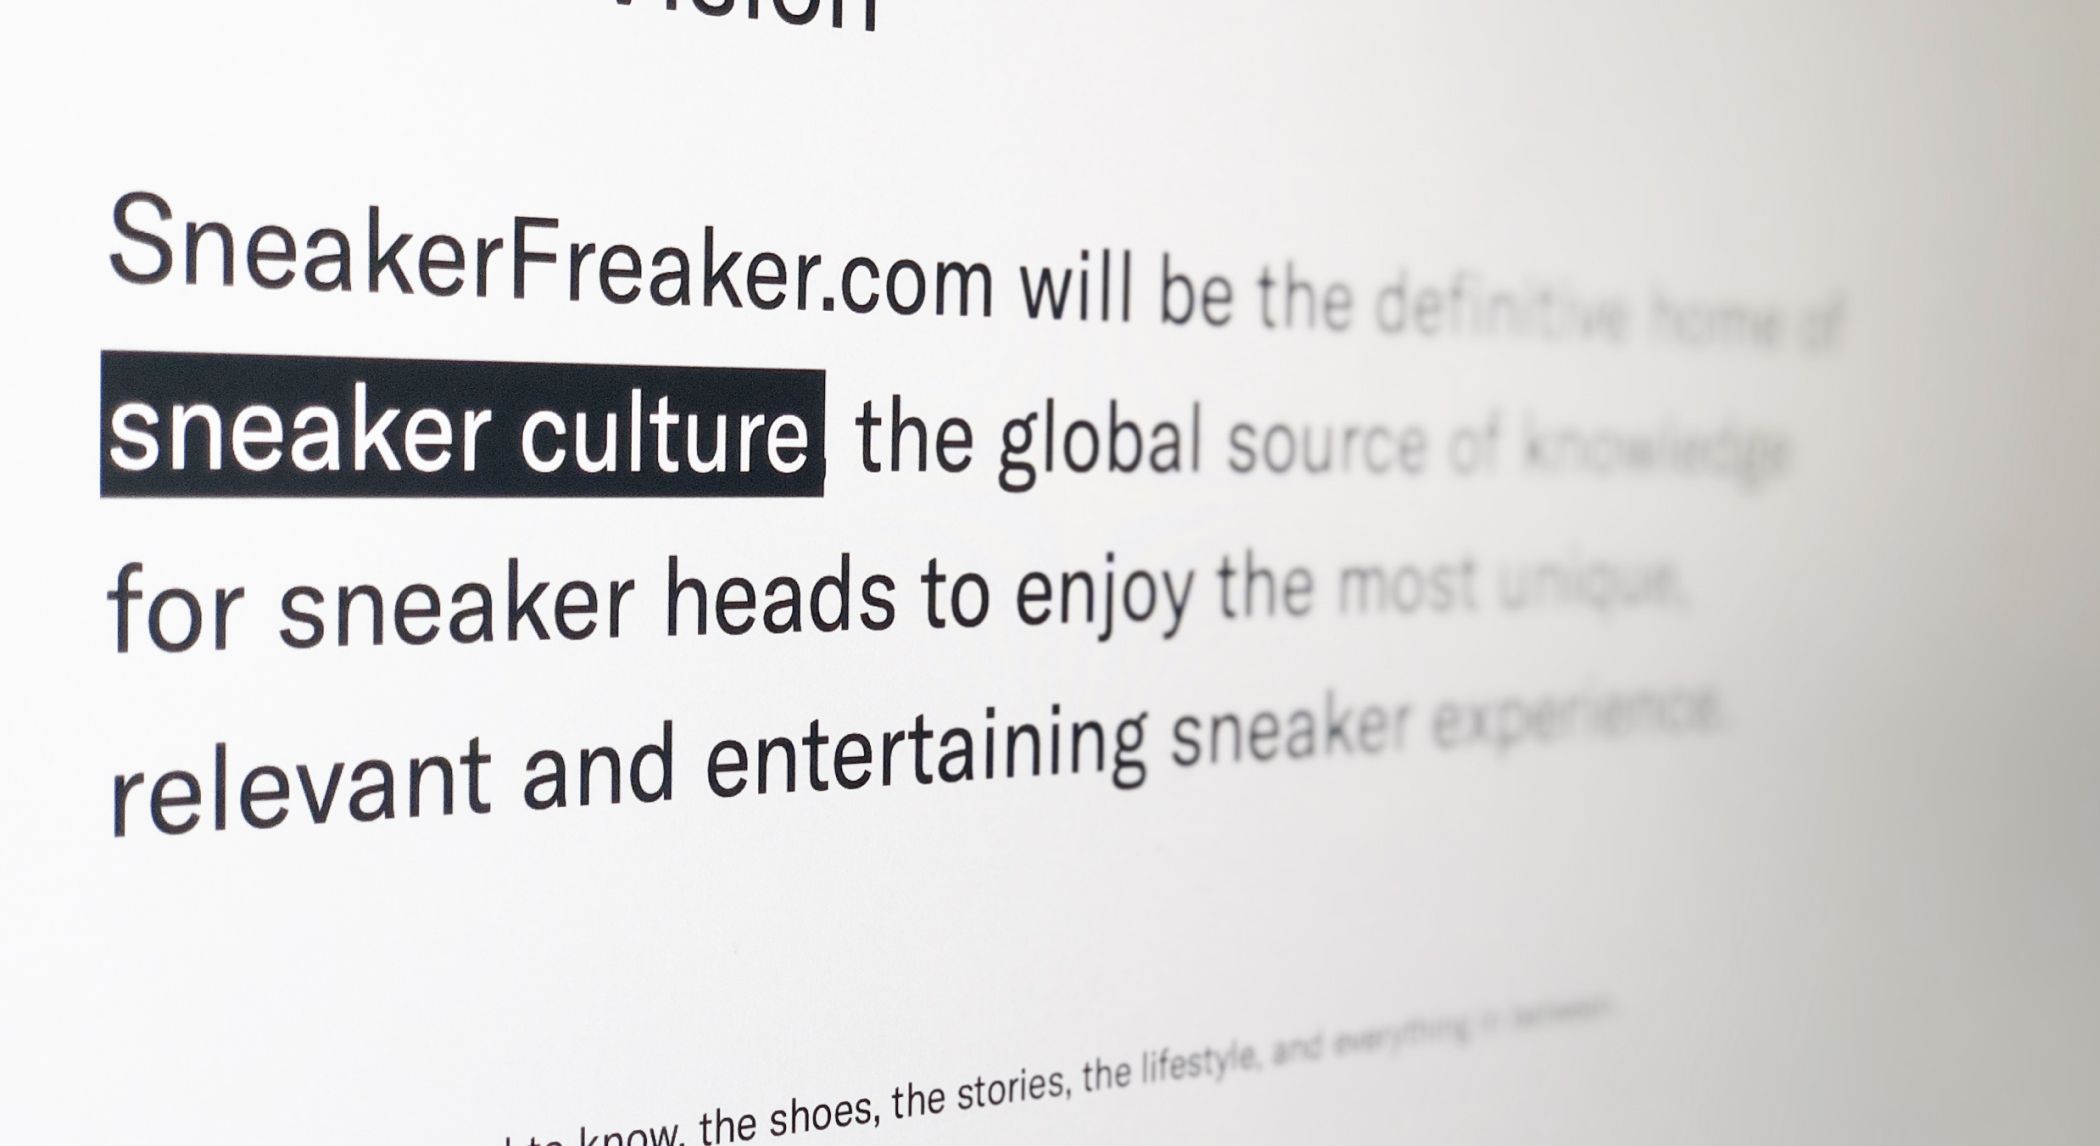 Sneaker Freaker's vision